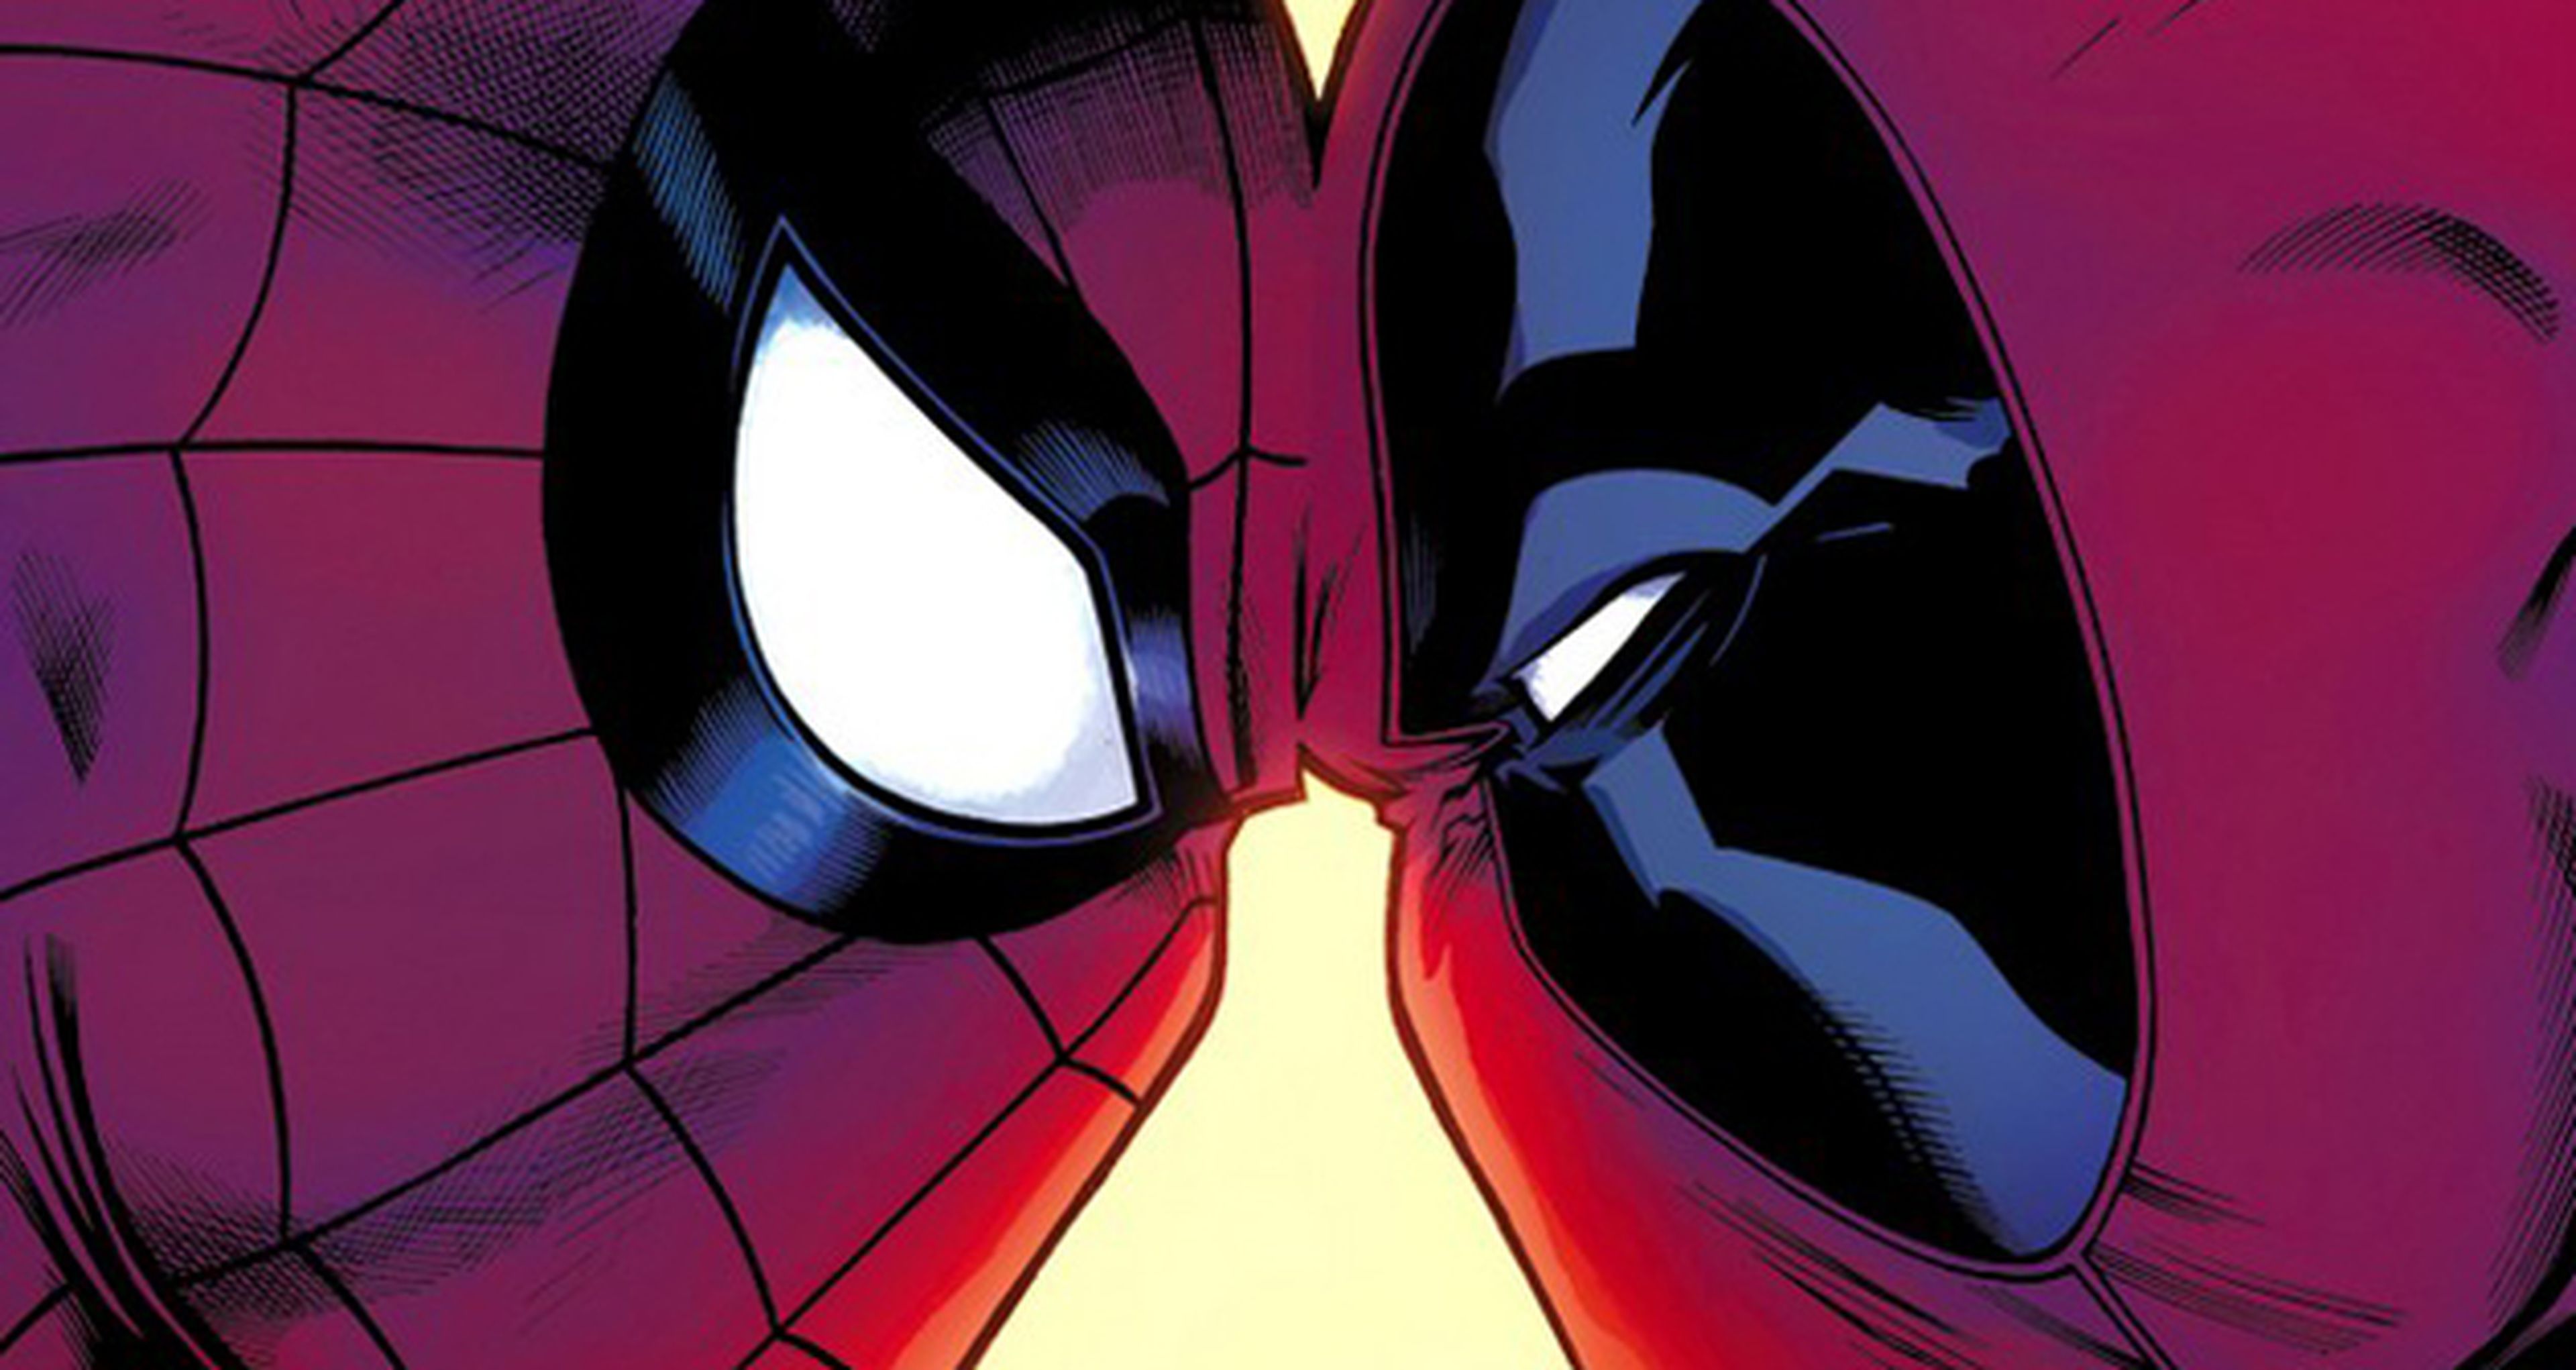 Spider-man/Deadpool: Avance del crossover